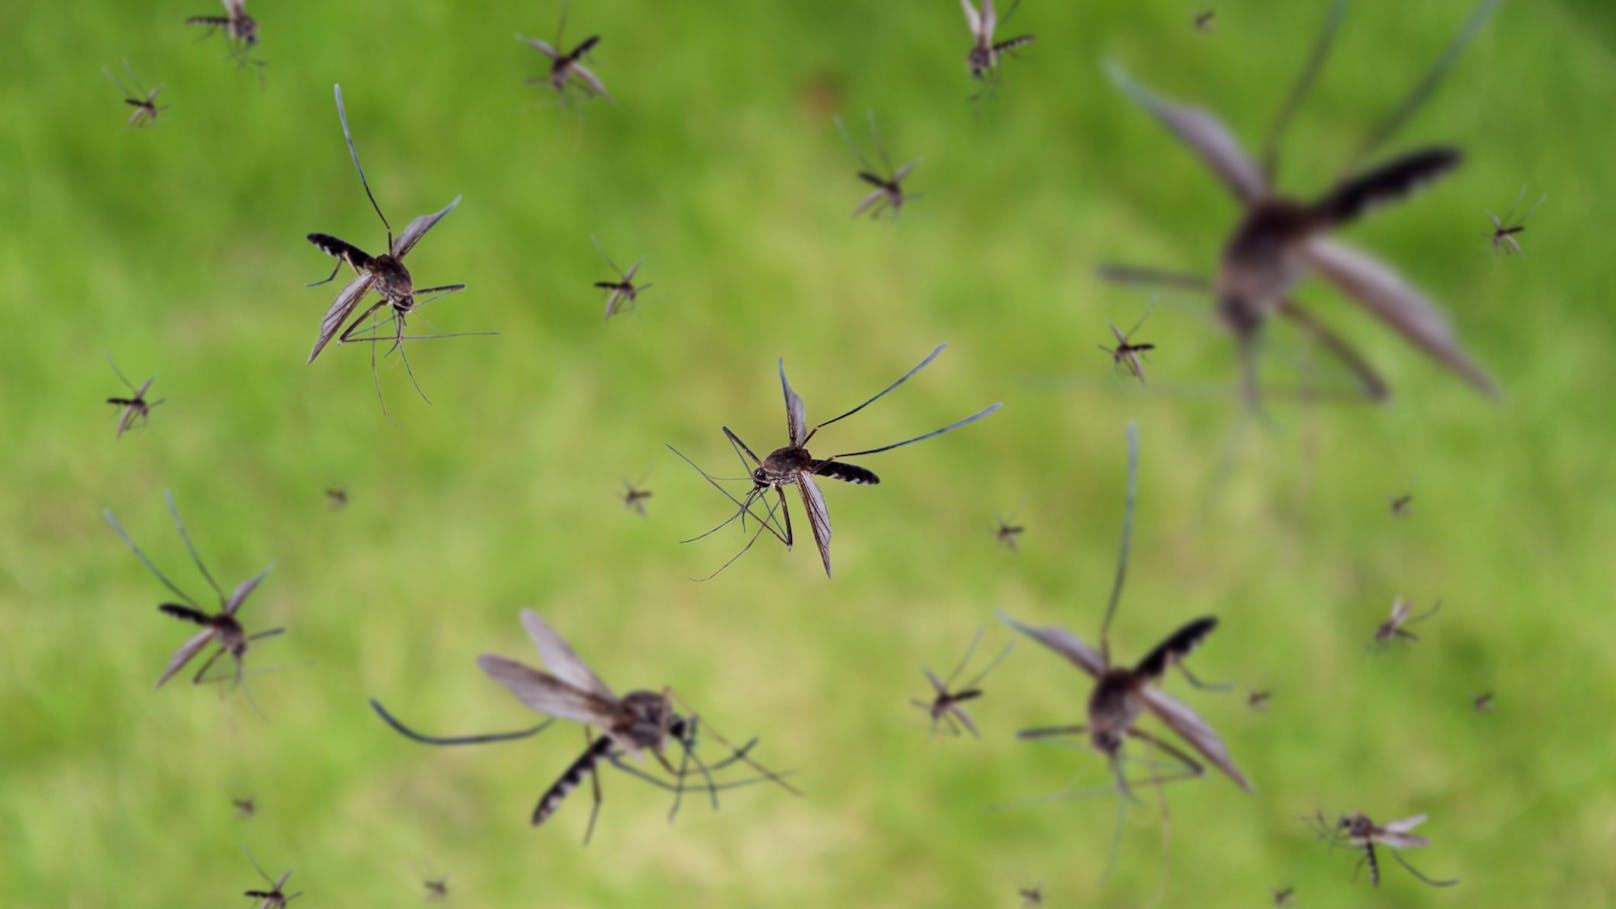 Die unkontrollierte Verbreitung der asiatischen Stechmücke dürfte zum Problem werden.